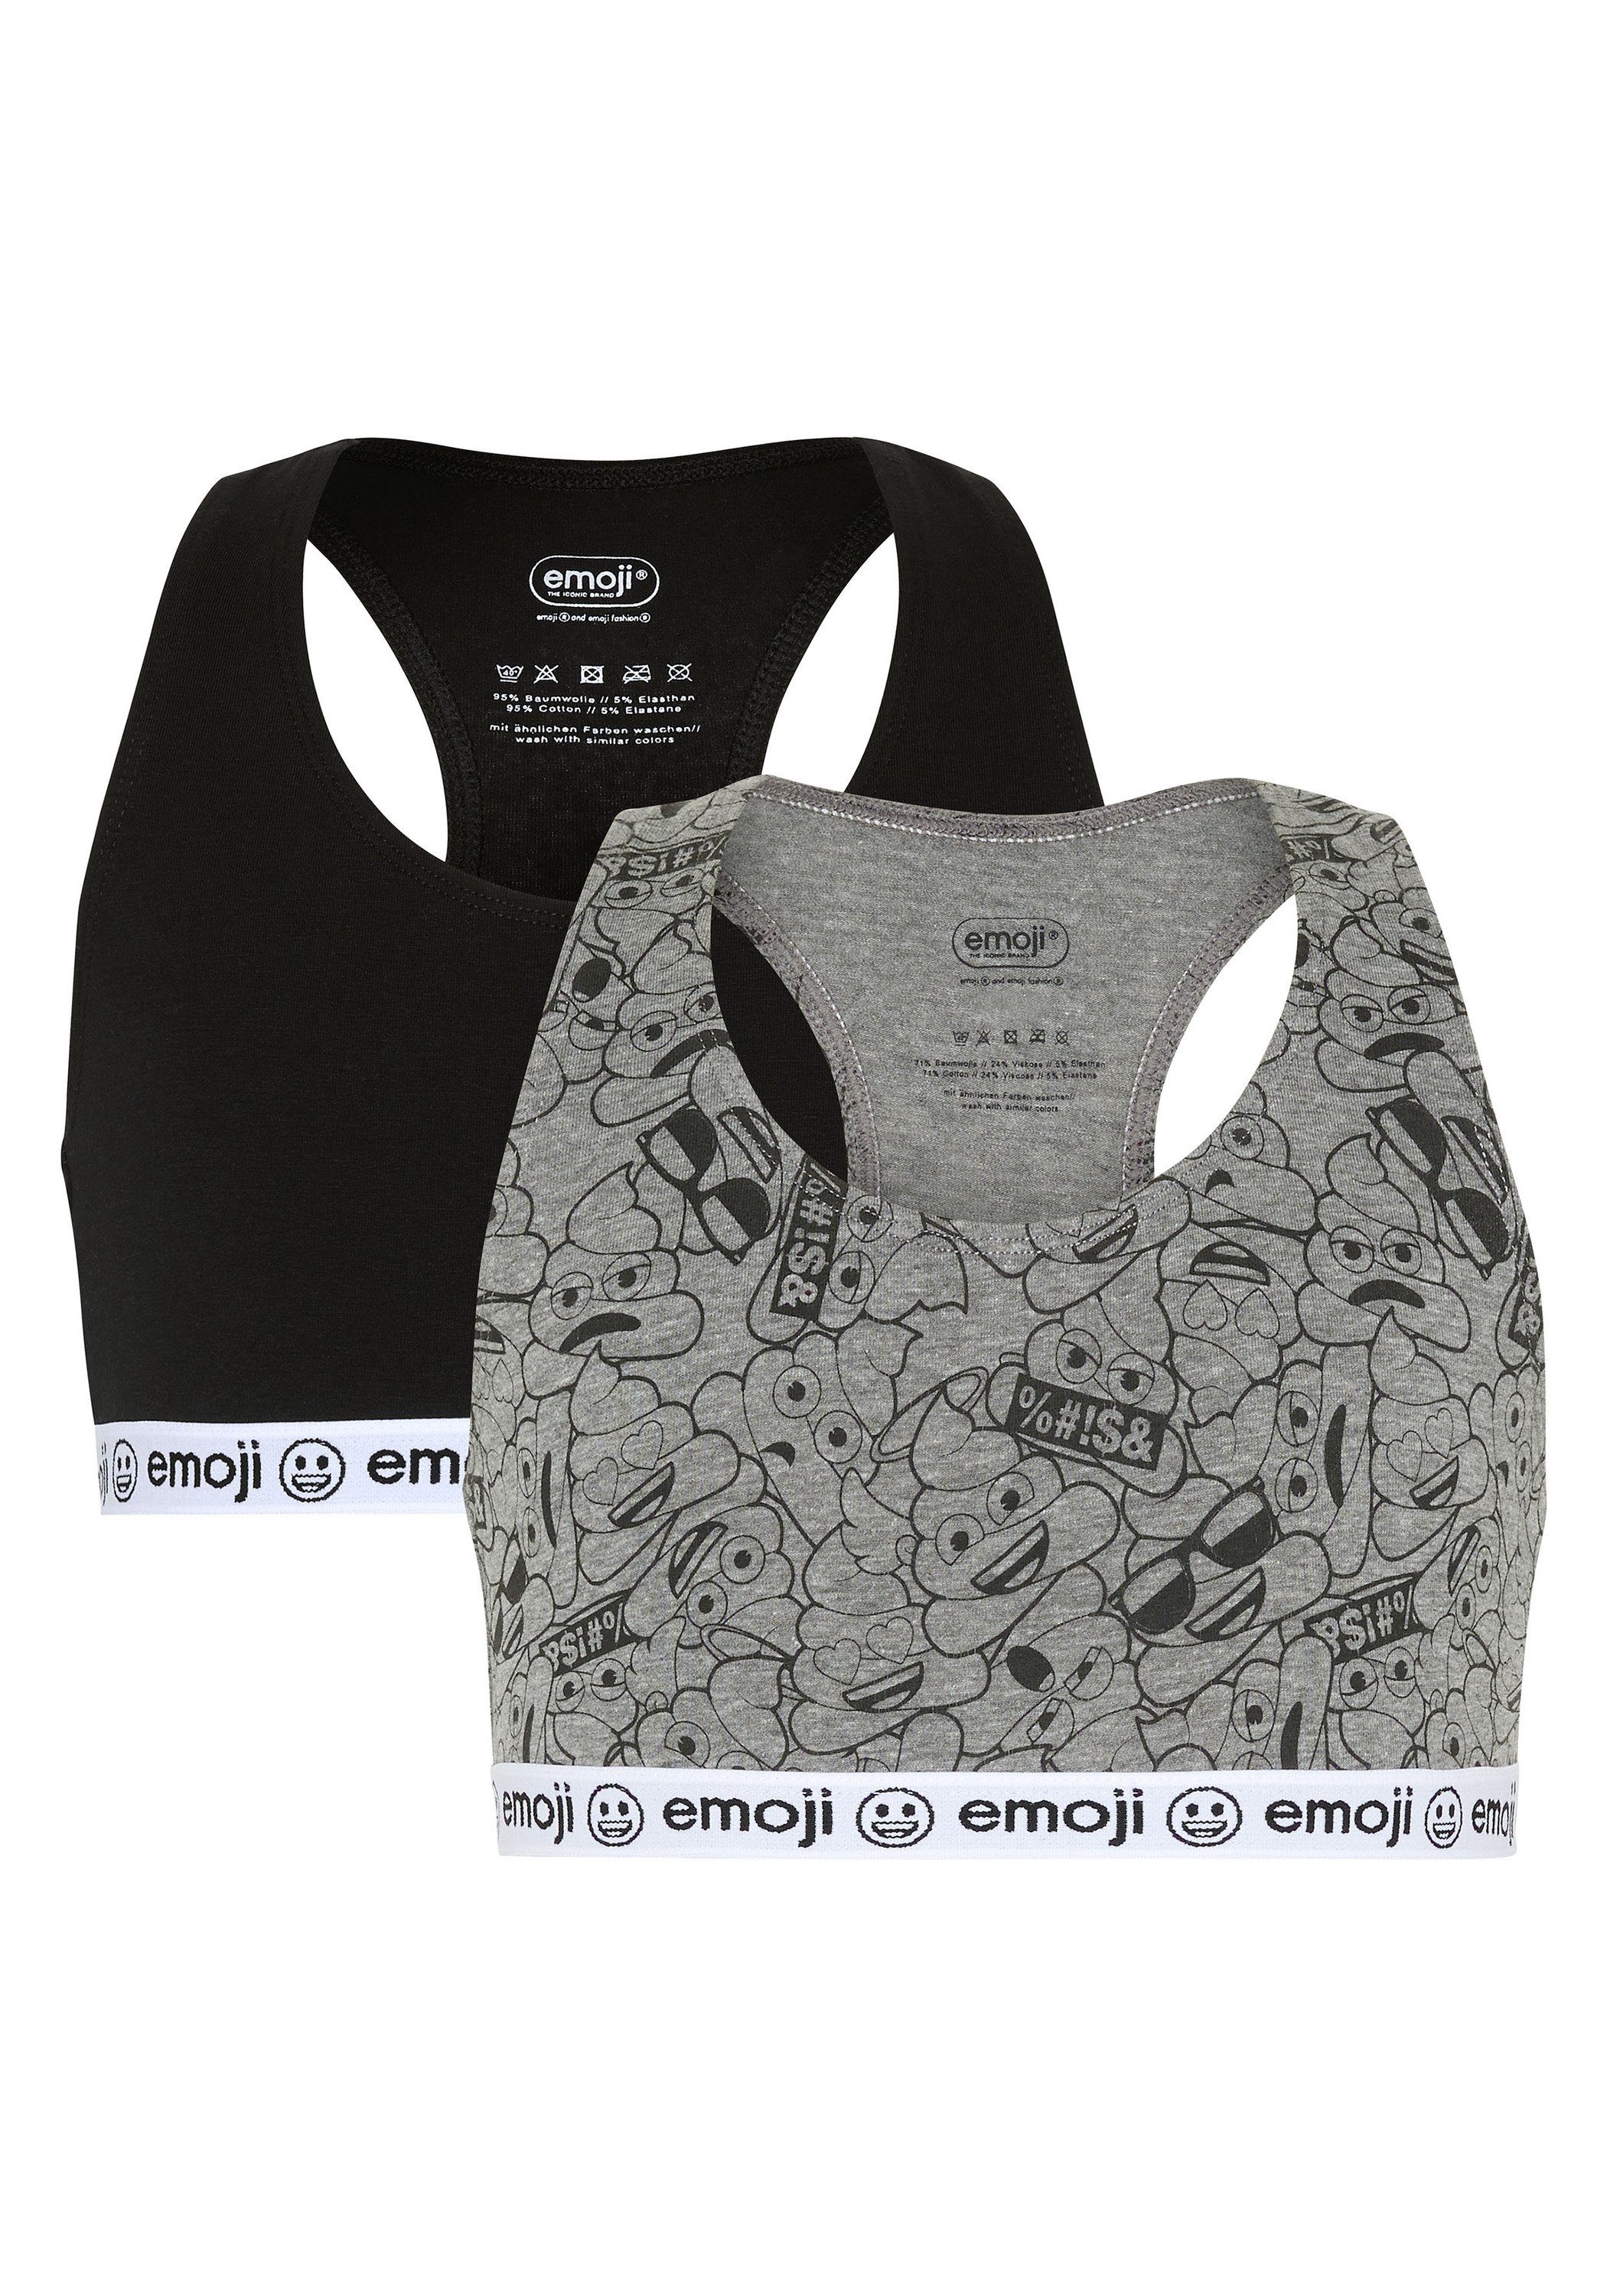 Zweierpack Grey/Black Emoji Unterbrustgummi 7590 Teenie-BH mit im elastischem Medium